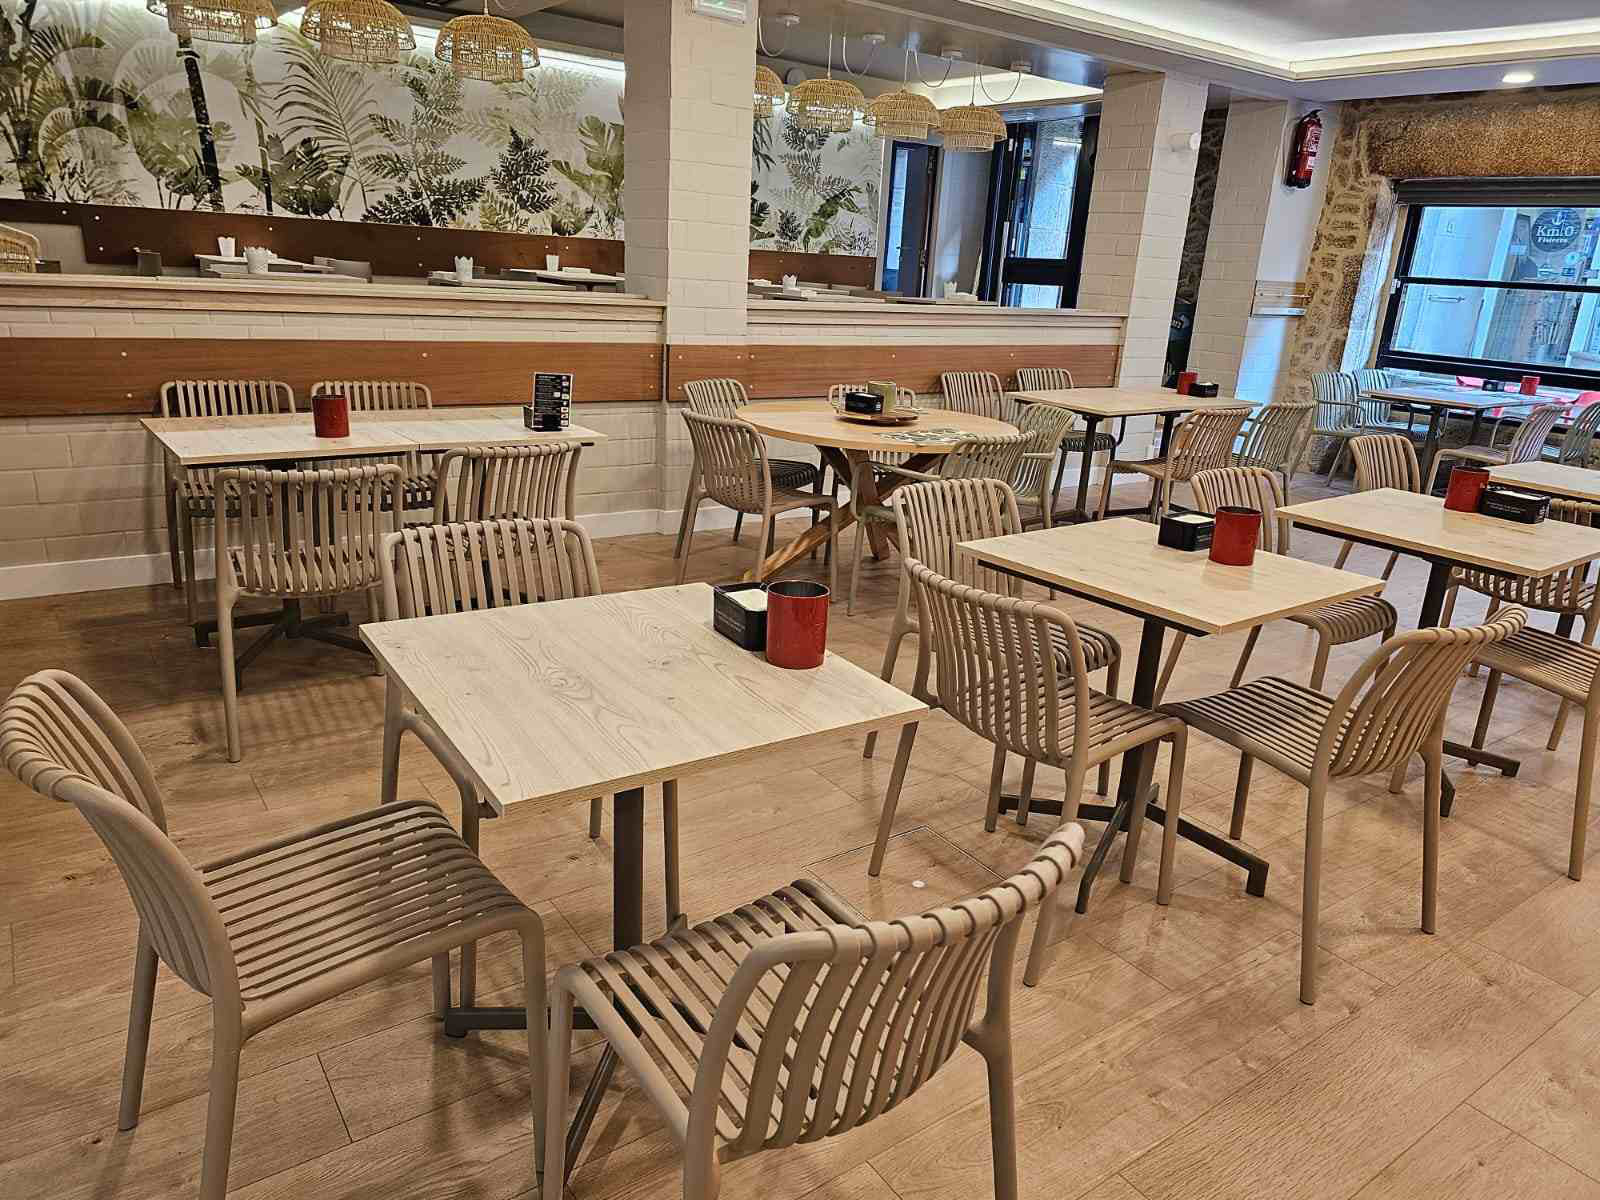 elegante cagetería con sillas y mesas de color beige con la barra al fondo de color marrón, instalaciones nuevas y muy limpias